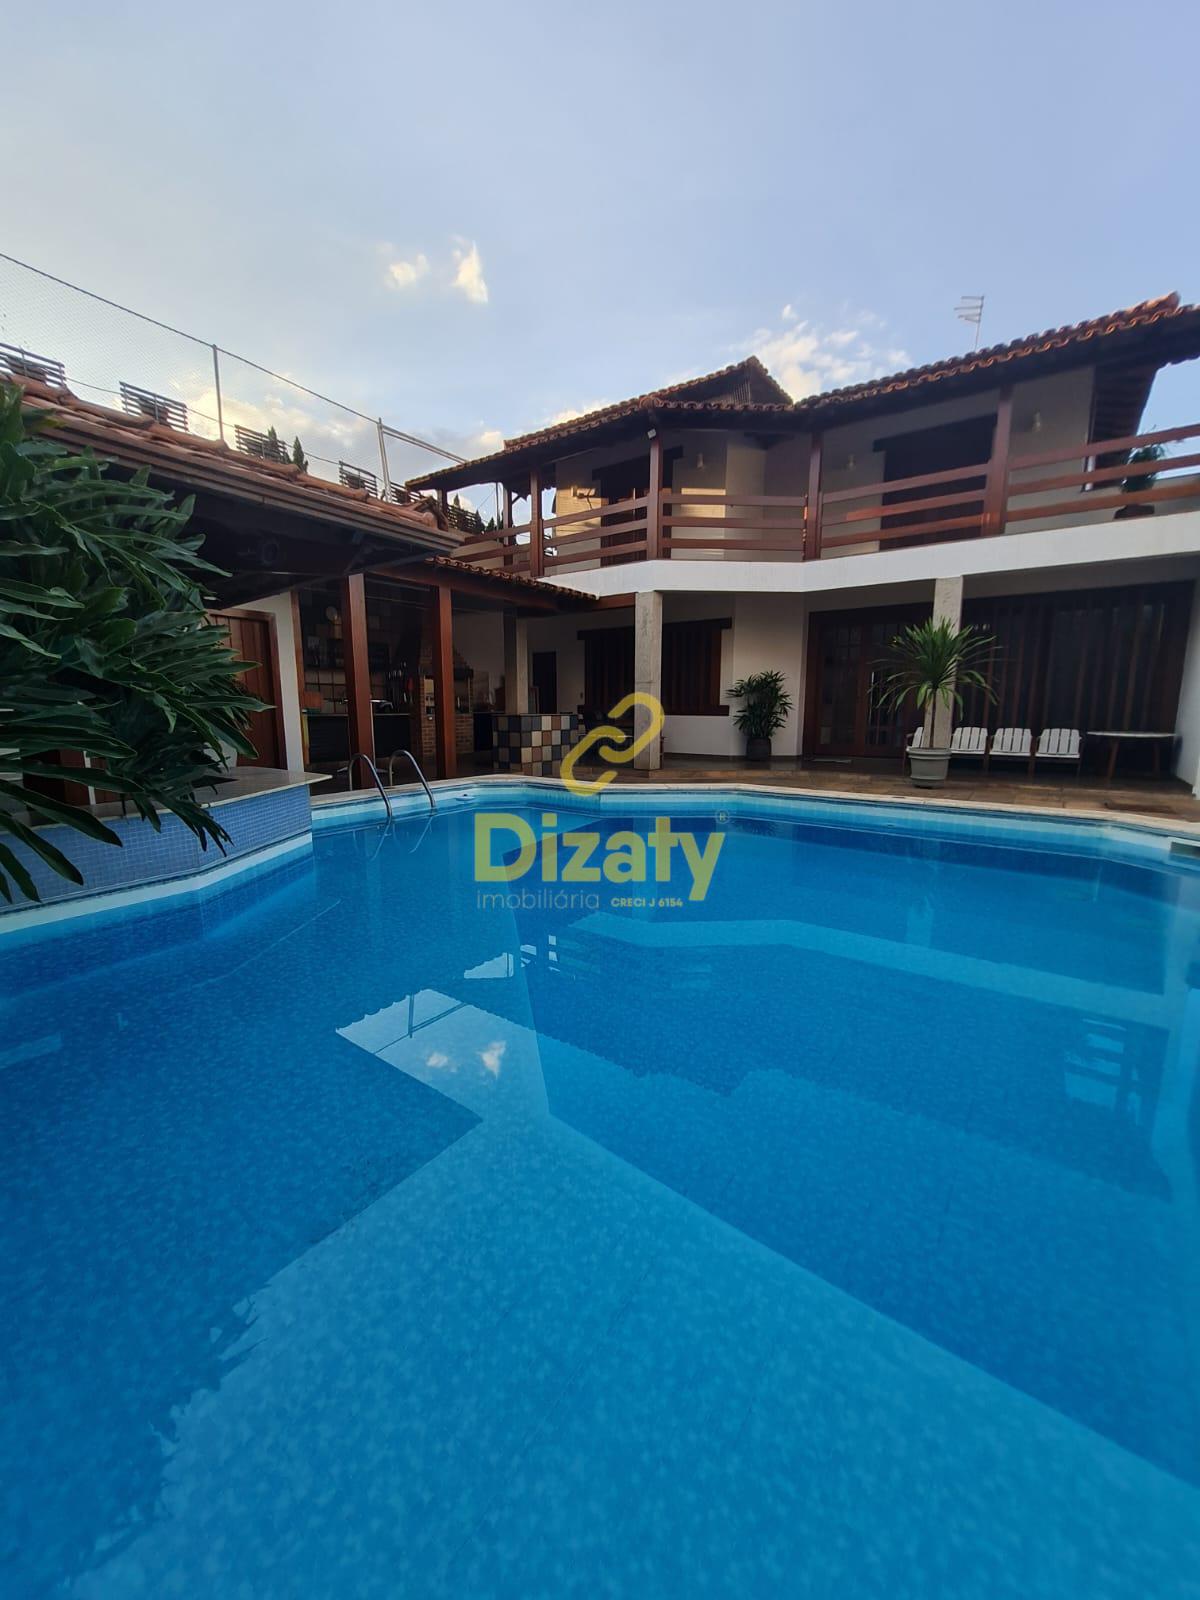 Casa com 2 pavimentos no bairro Mangabeiras, espao gourmet, sauna, piscina...